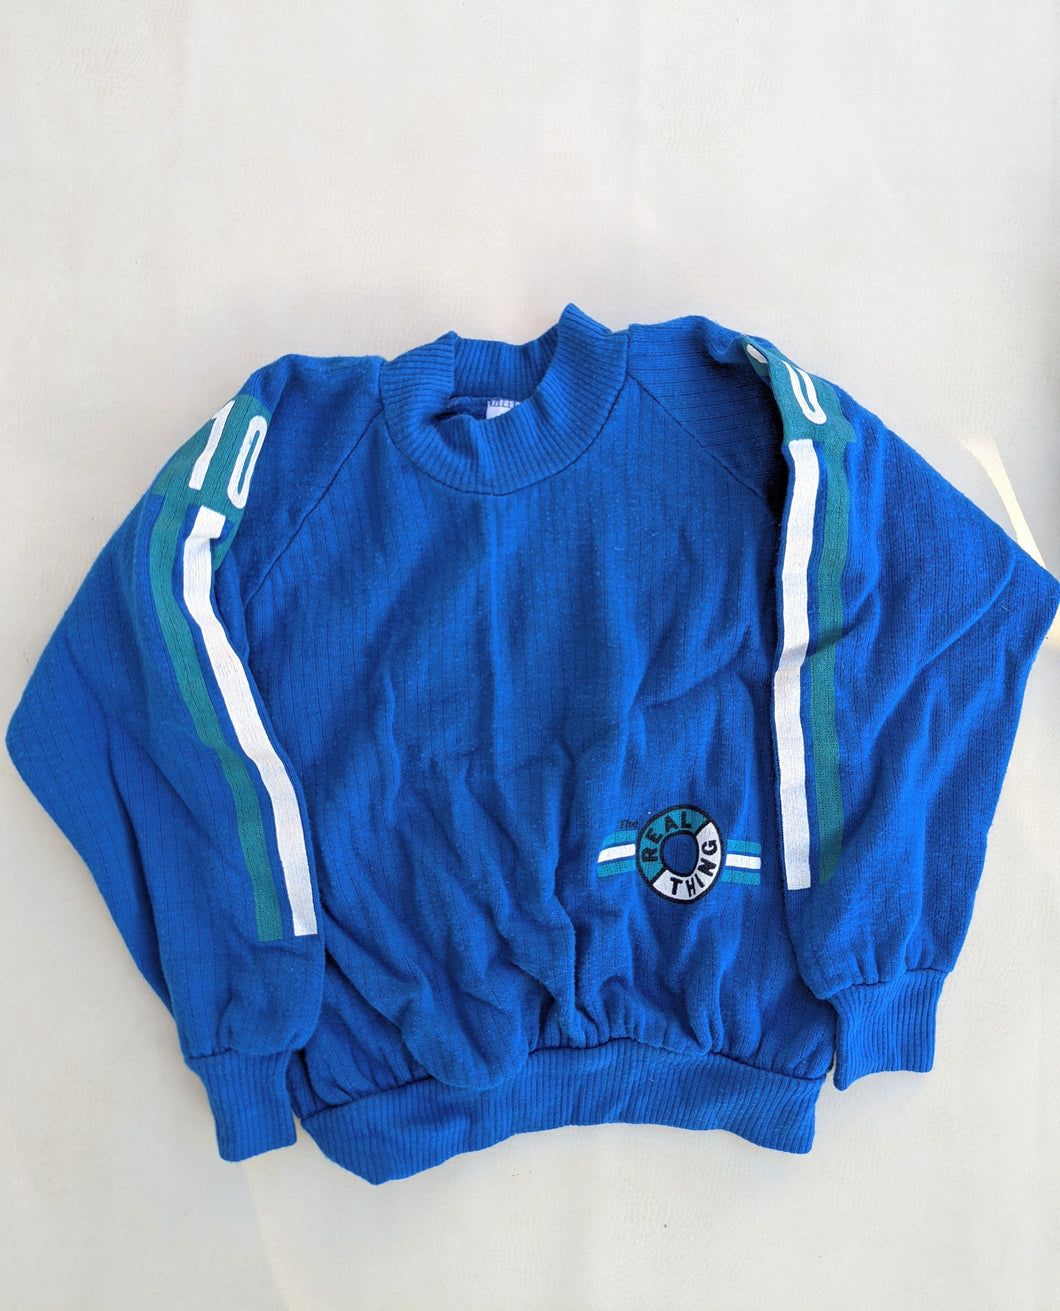 Digits Blue Sweatshirt 5y